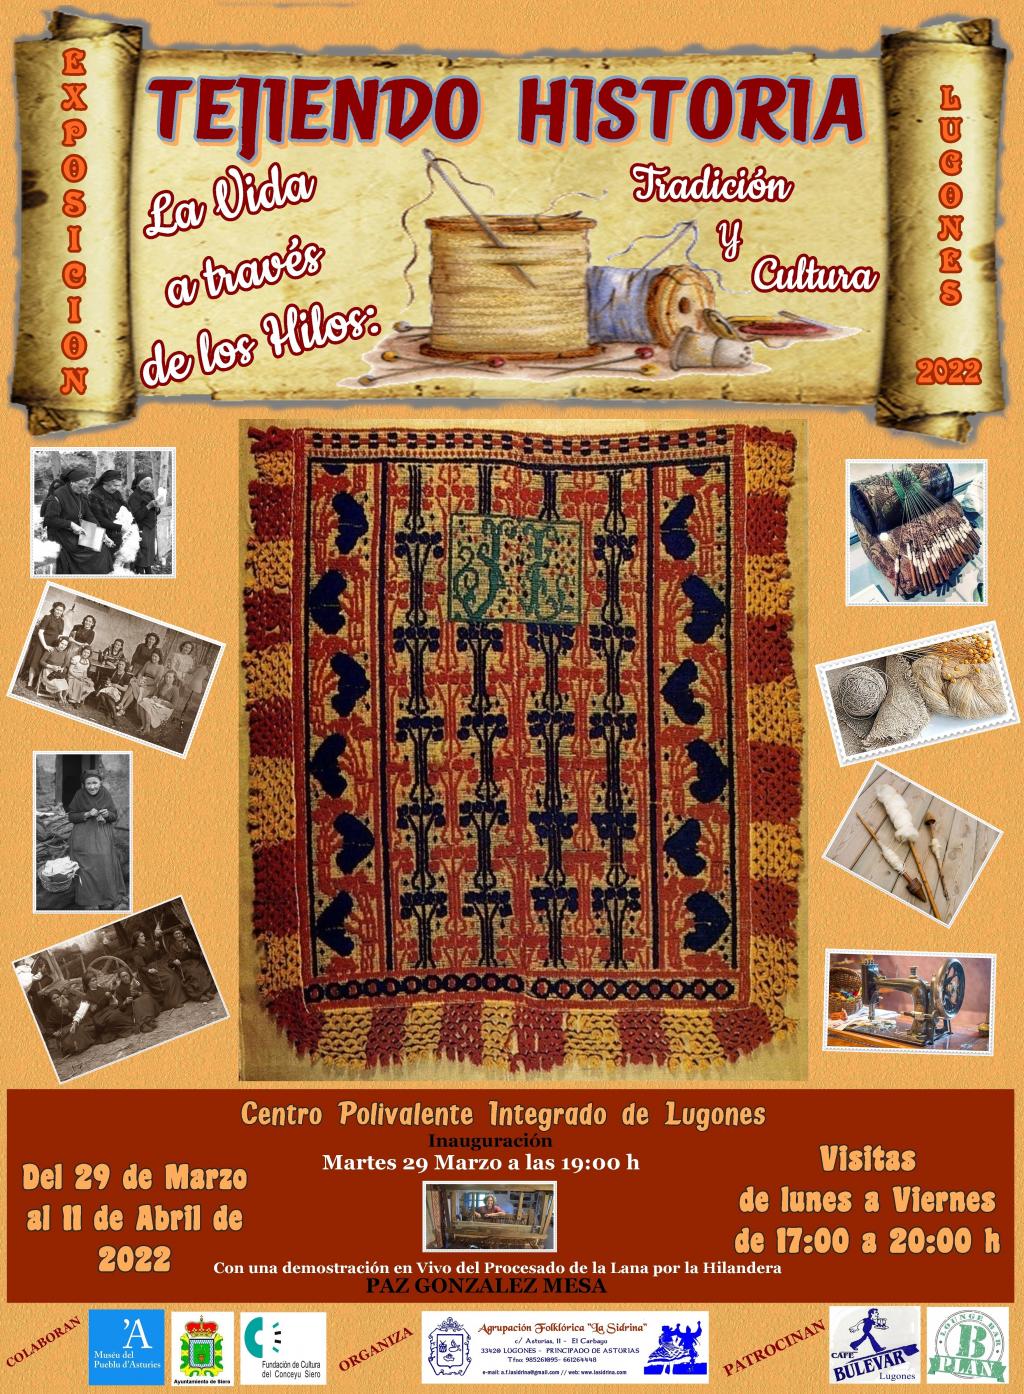 El Tapin - La Sidrina organiza su Quincena Cultural con la exposición “Tejiendo Historia: La vida a través de los Hilos: Tradición y cultura”